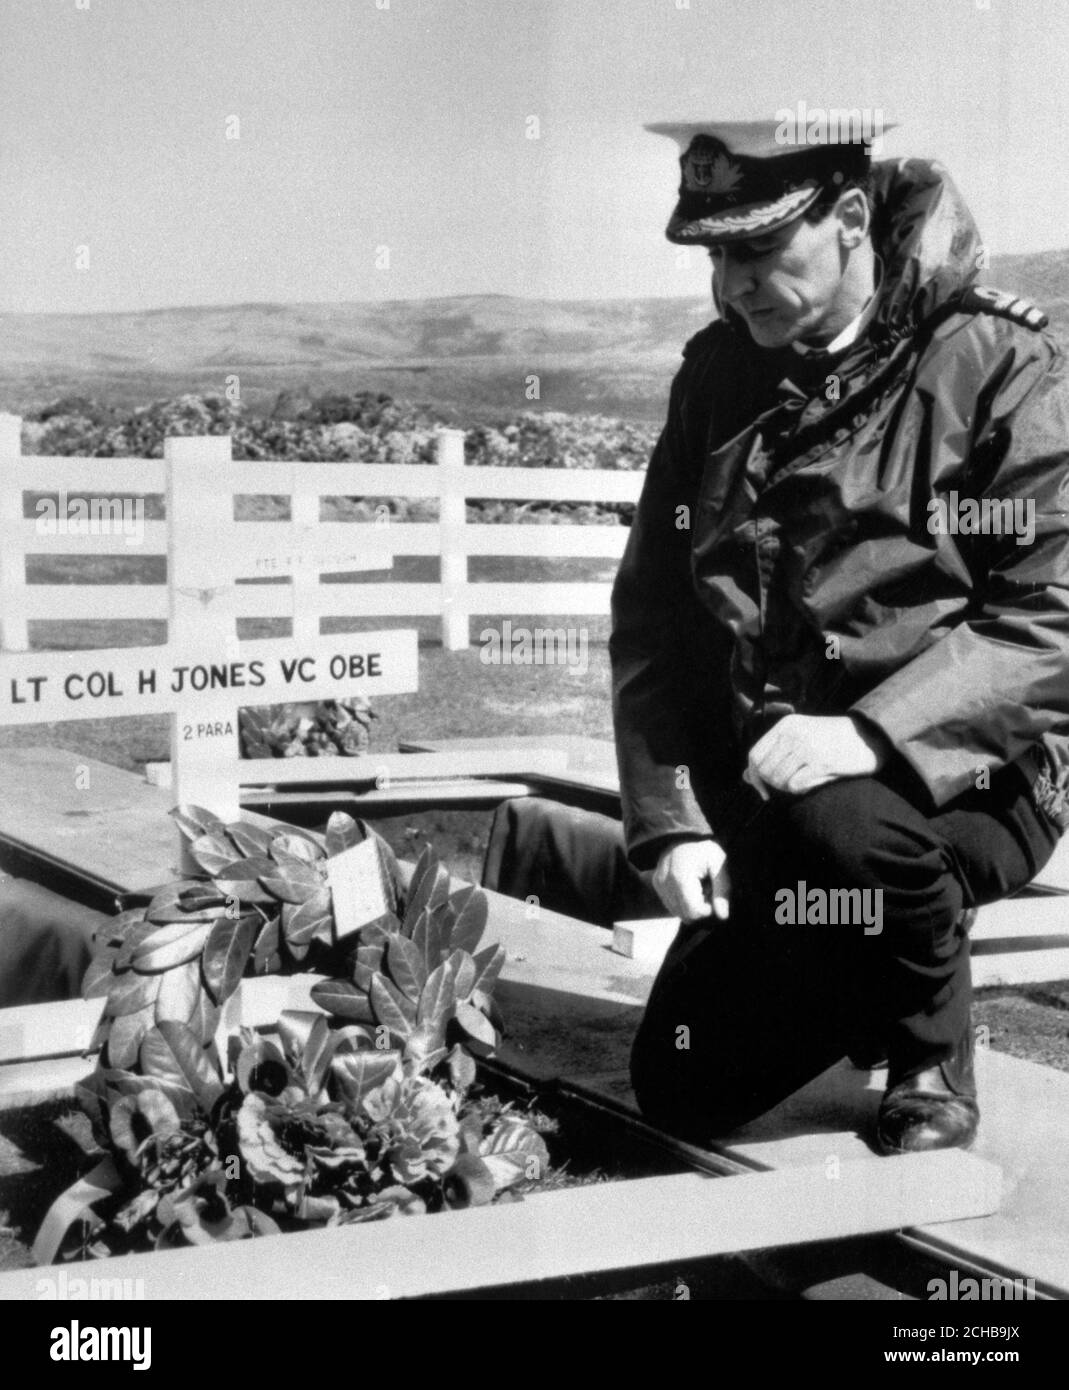 Une photo du ministère de la Défense, publiée à Londres, montre le CDR Tim Jones, RN, s'agenouillant sur la tombe de son frère le Lt Col 'H' Jones VC, qui était parmi les 14 hommes tués dans les combats des Malouines. Il doit être enterré au cimetière militaire de Blue Beach à Port San Carlos. Banque D'Images